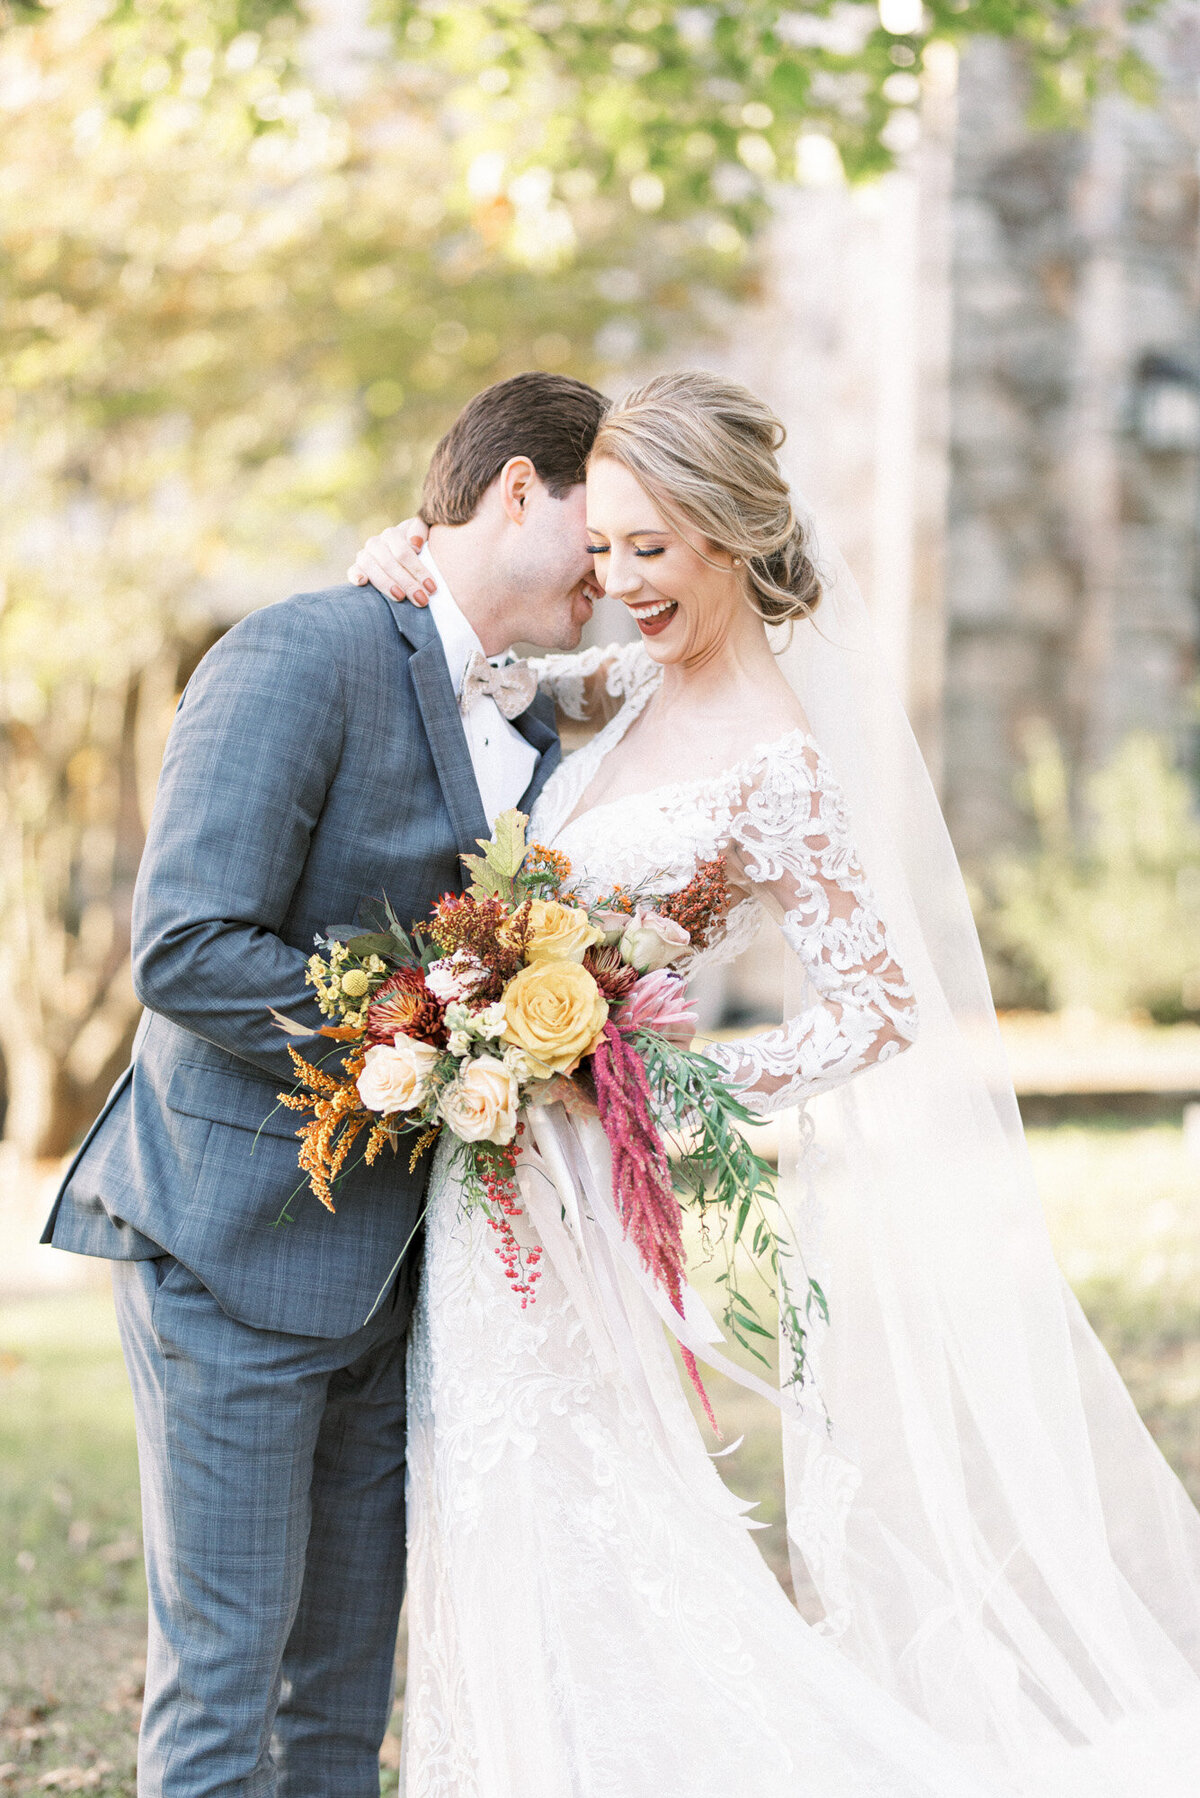 KelseyDawnPhotography-Alabama-Wedding-Photographer-Infinity-StyledShoot-5